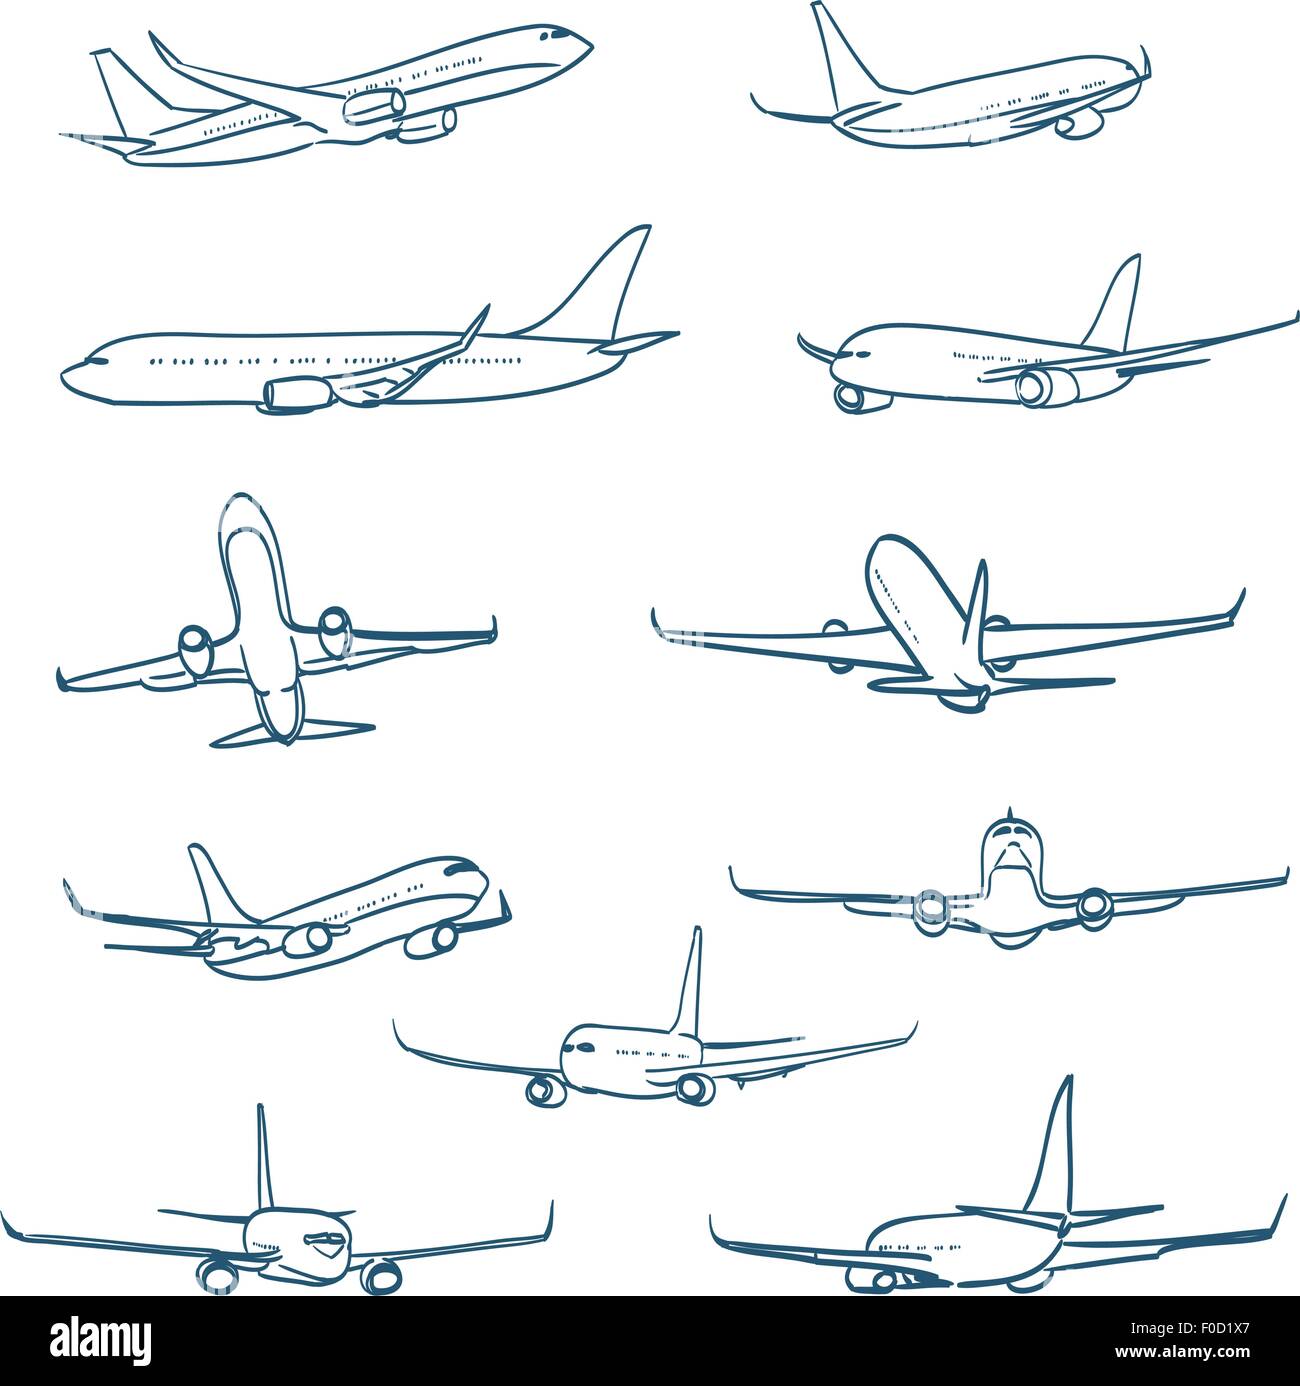 Croquis d'avions Illustration de Vecteur